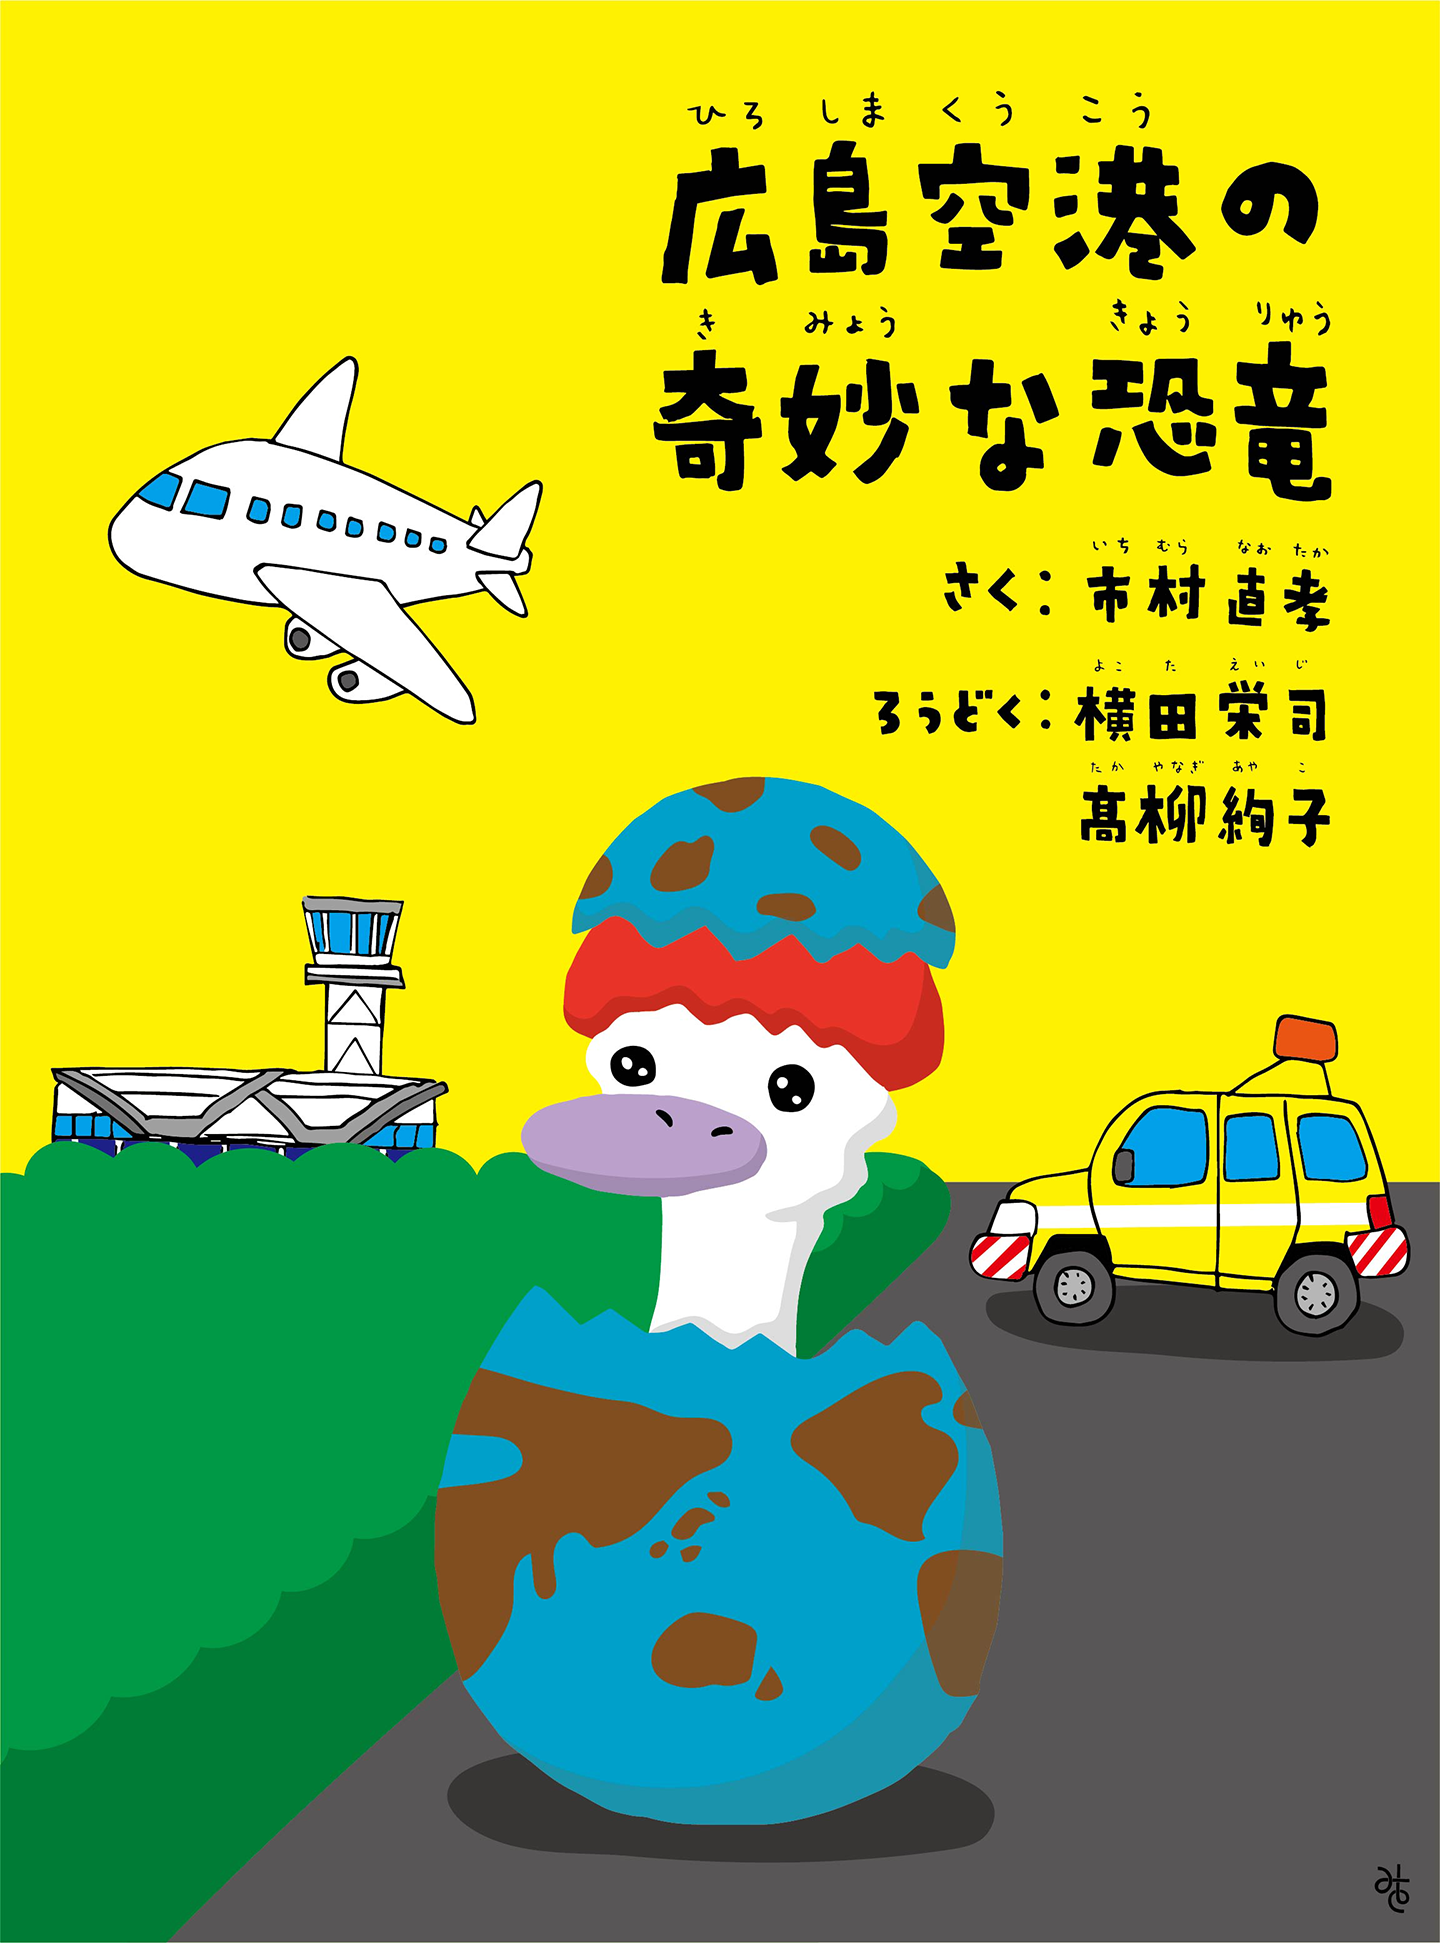 朗読「広島空港の奇妙な恐竜」